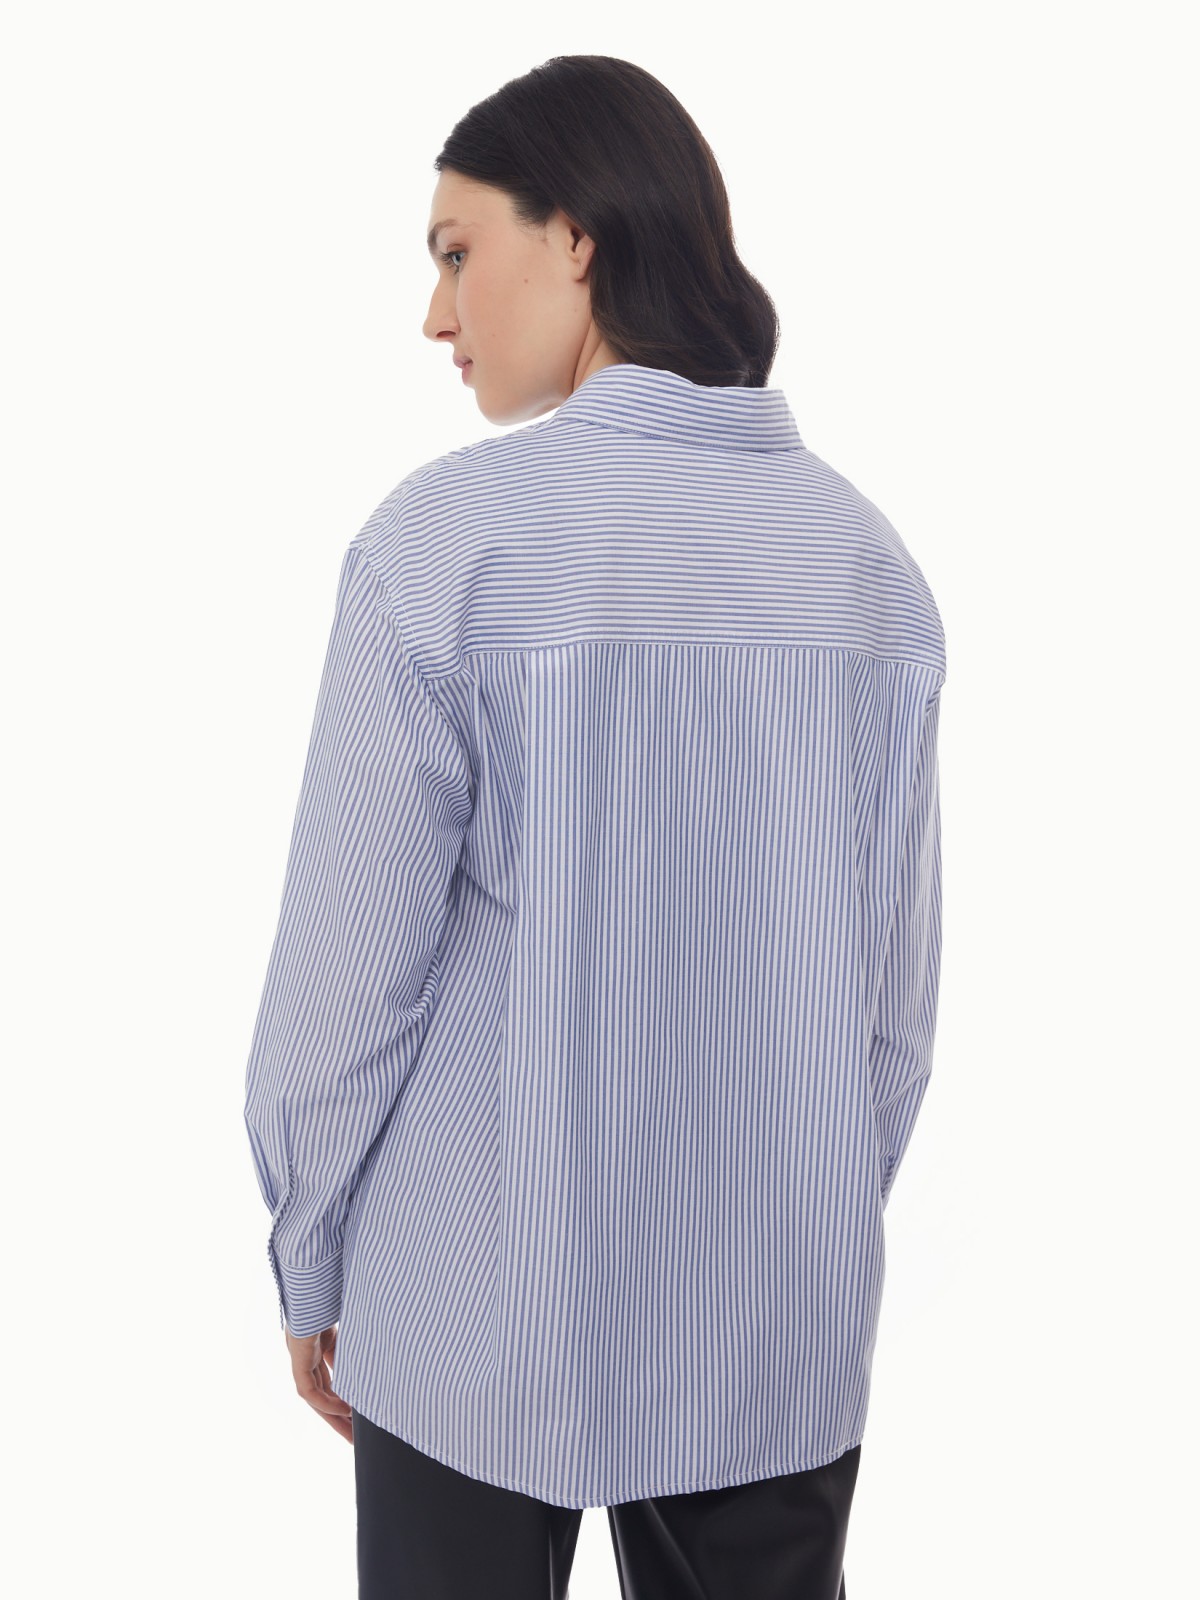 Блузка-рубашка в спортивном стиле с узором в полоску zolla 024131159053, цвет светло-голубой, размер XS - фото 6